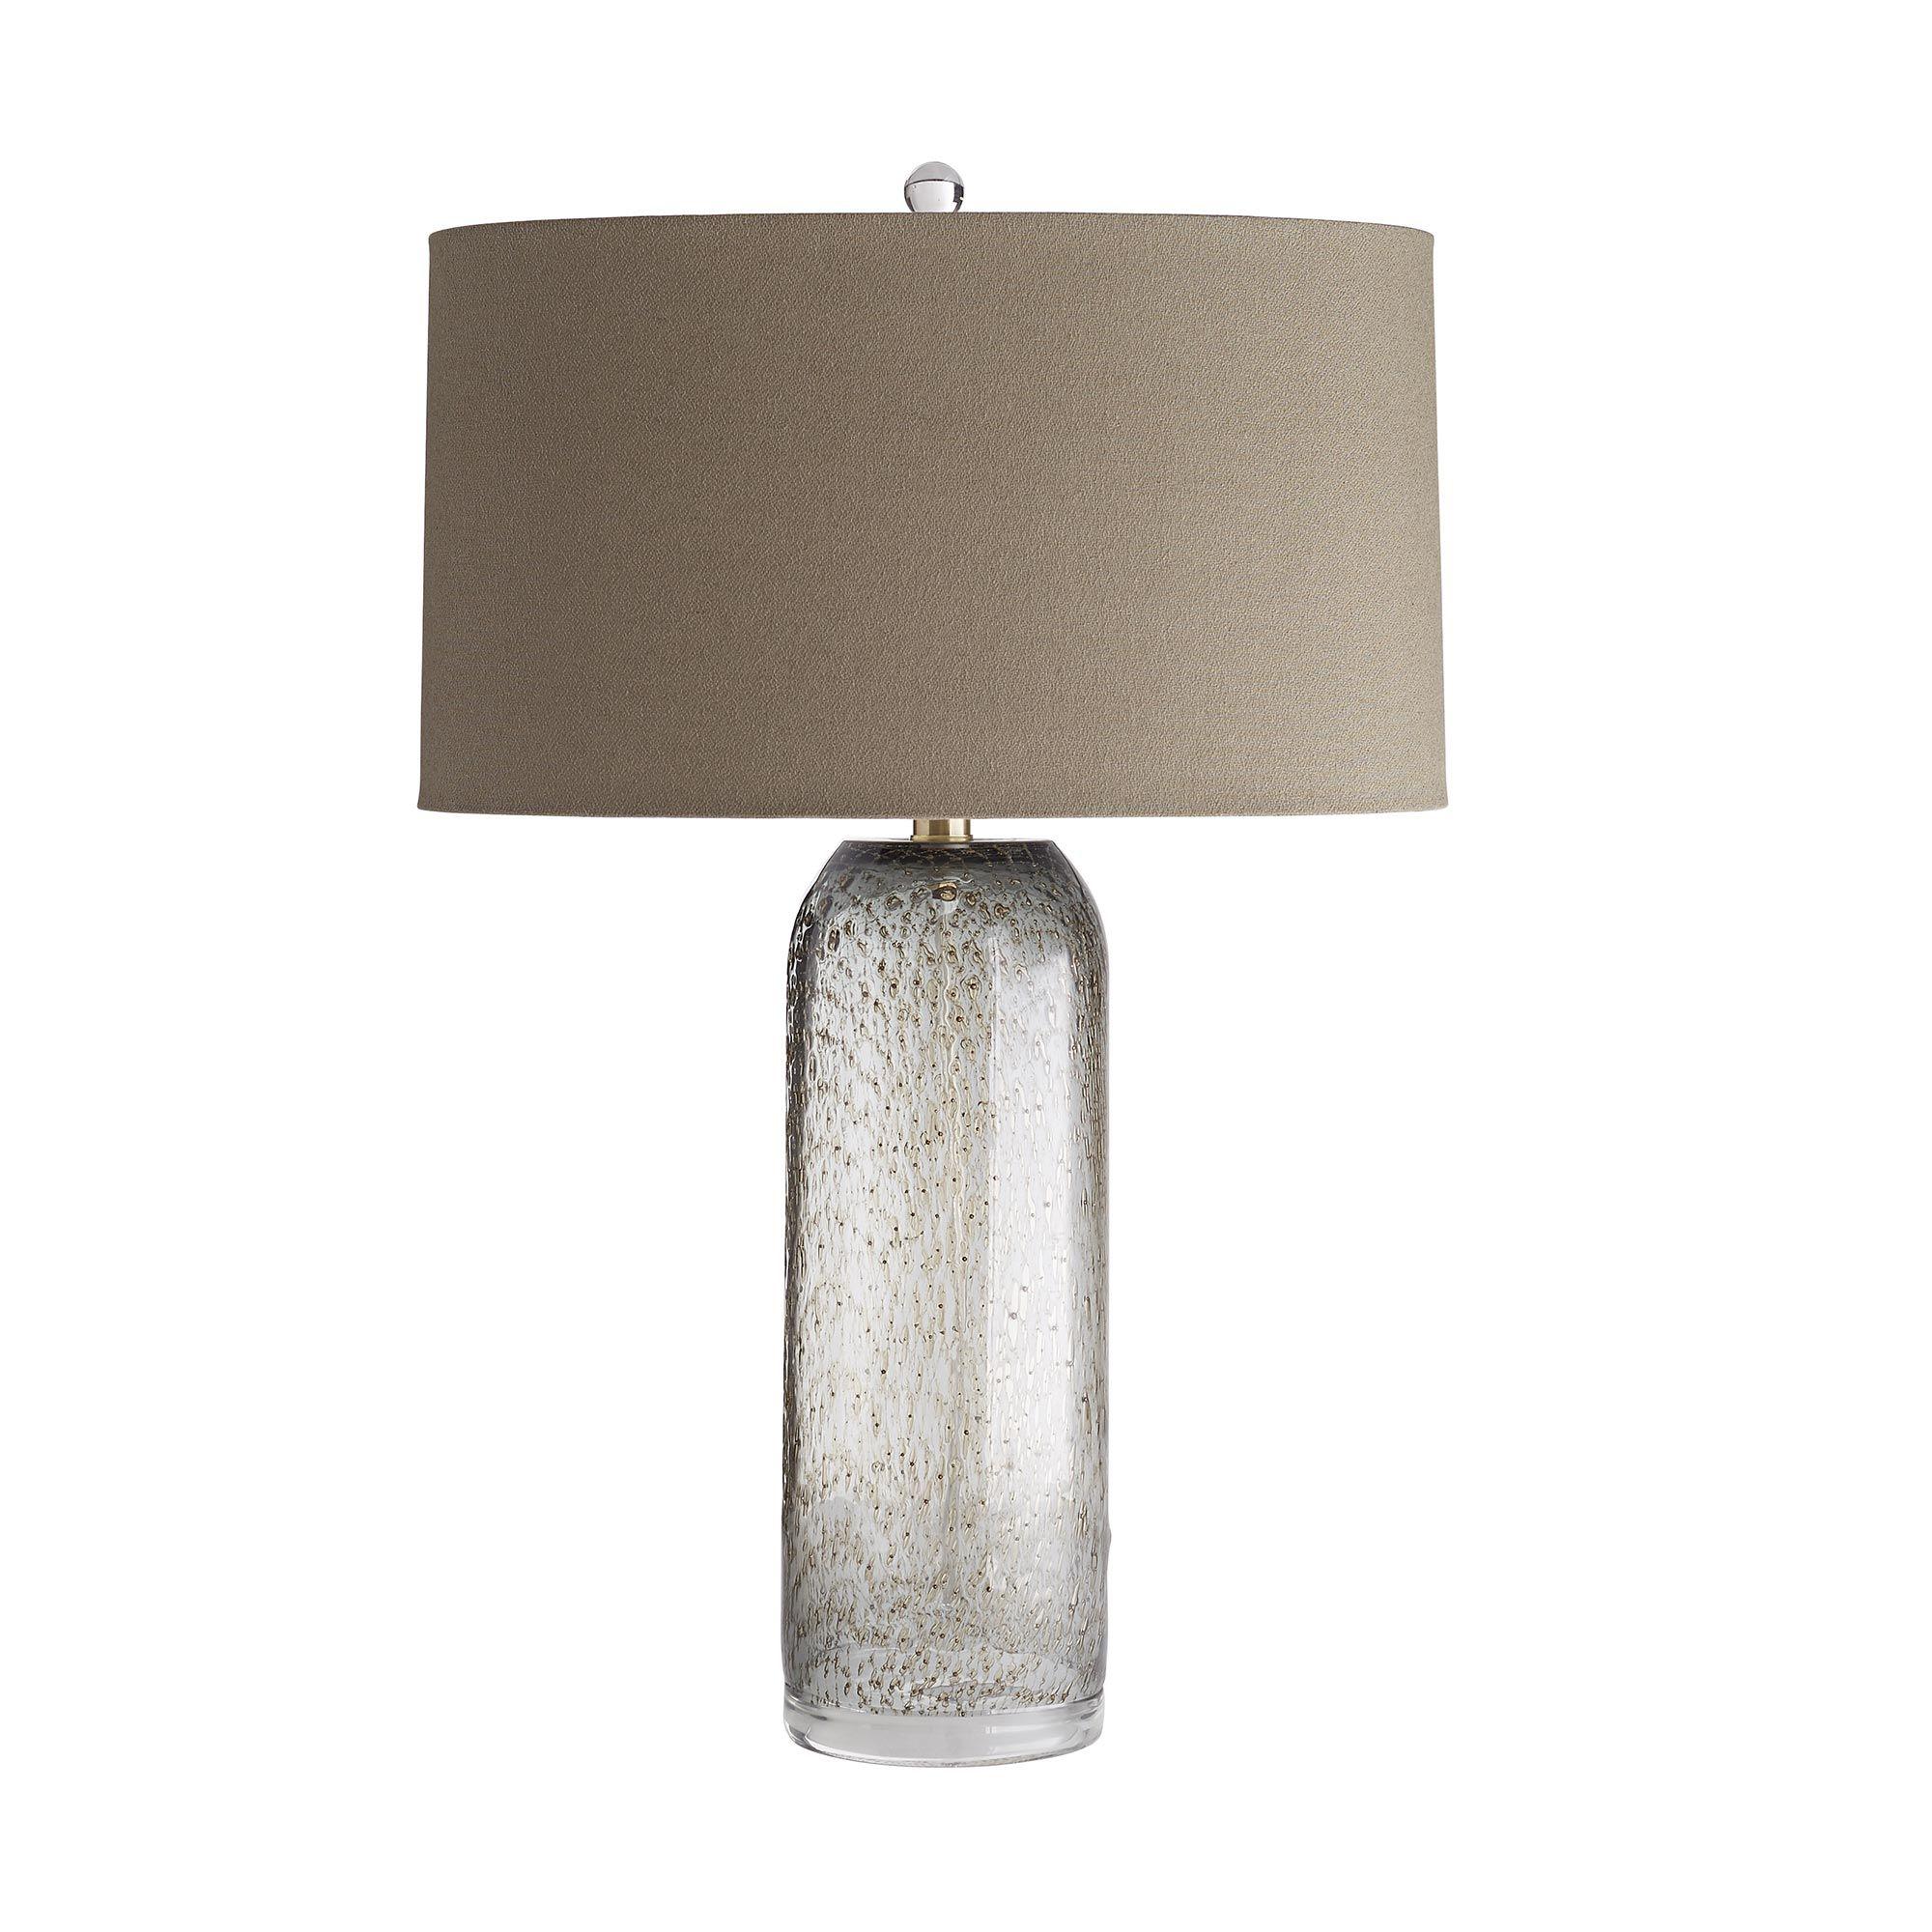 Купить Настольная лампа Orville Lamp в интернет-магазине roooms.ru